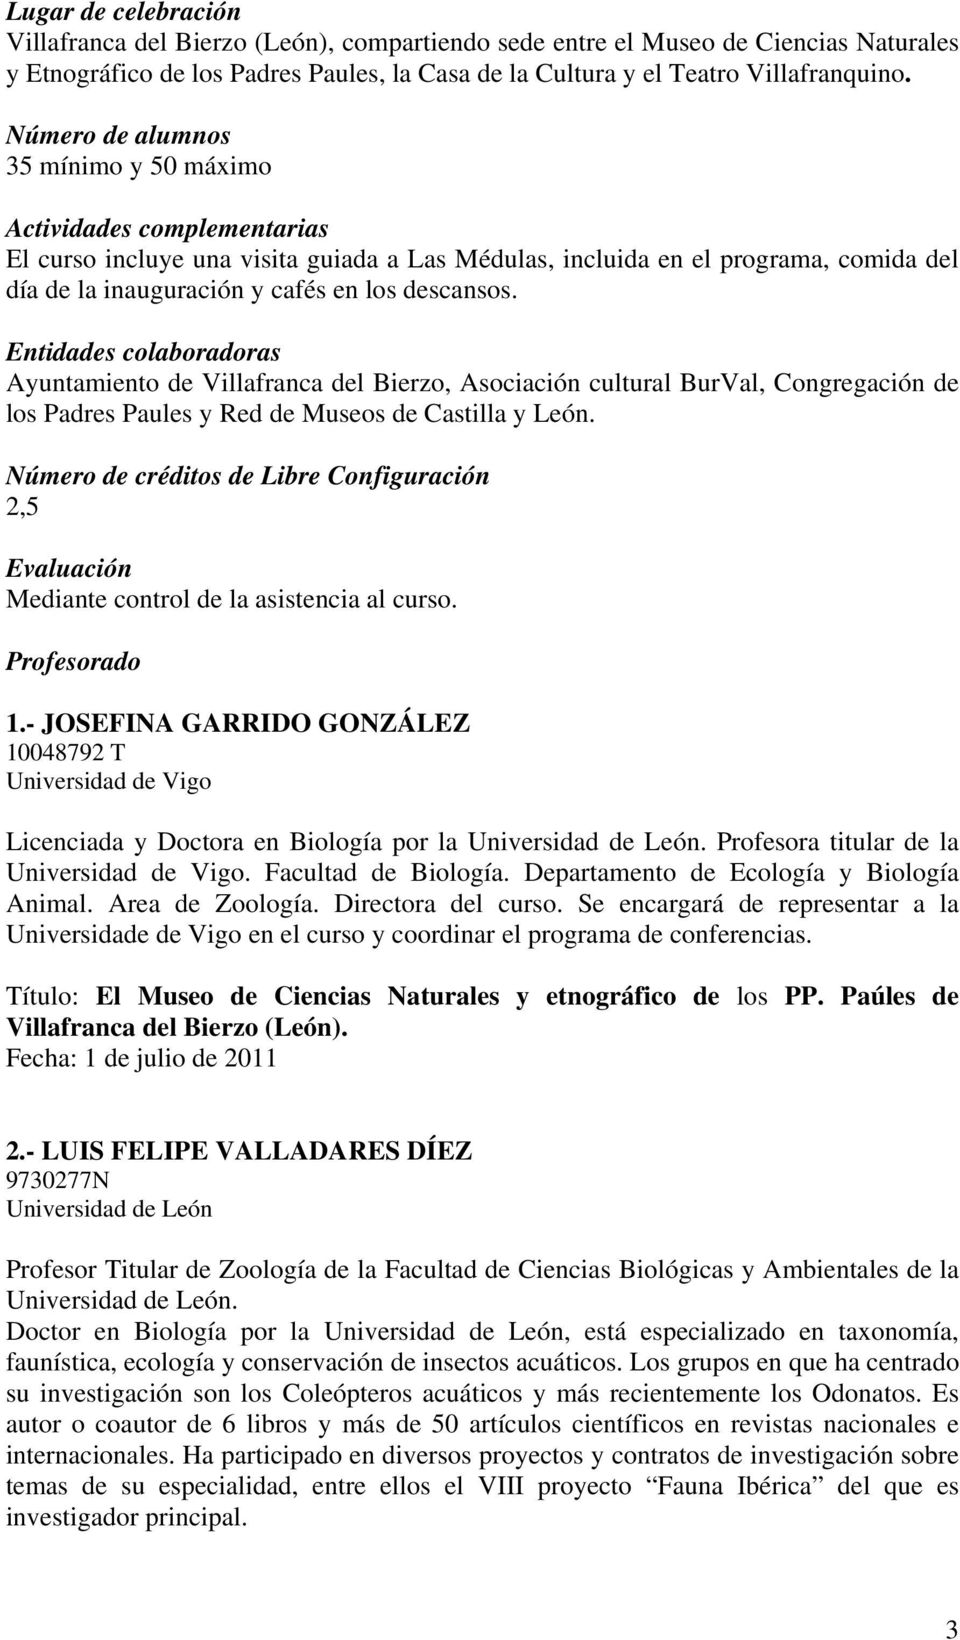 descansos. Entidades colaboradoras Ayuntamiento de Villafranca del Bierzo, Asociación cultural BurVal, Congregación de los Padres Paules y Red de Museos de Castilla y León.